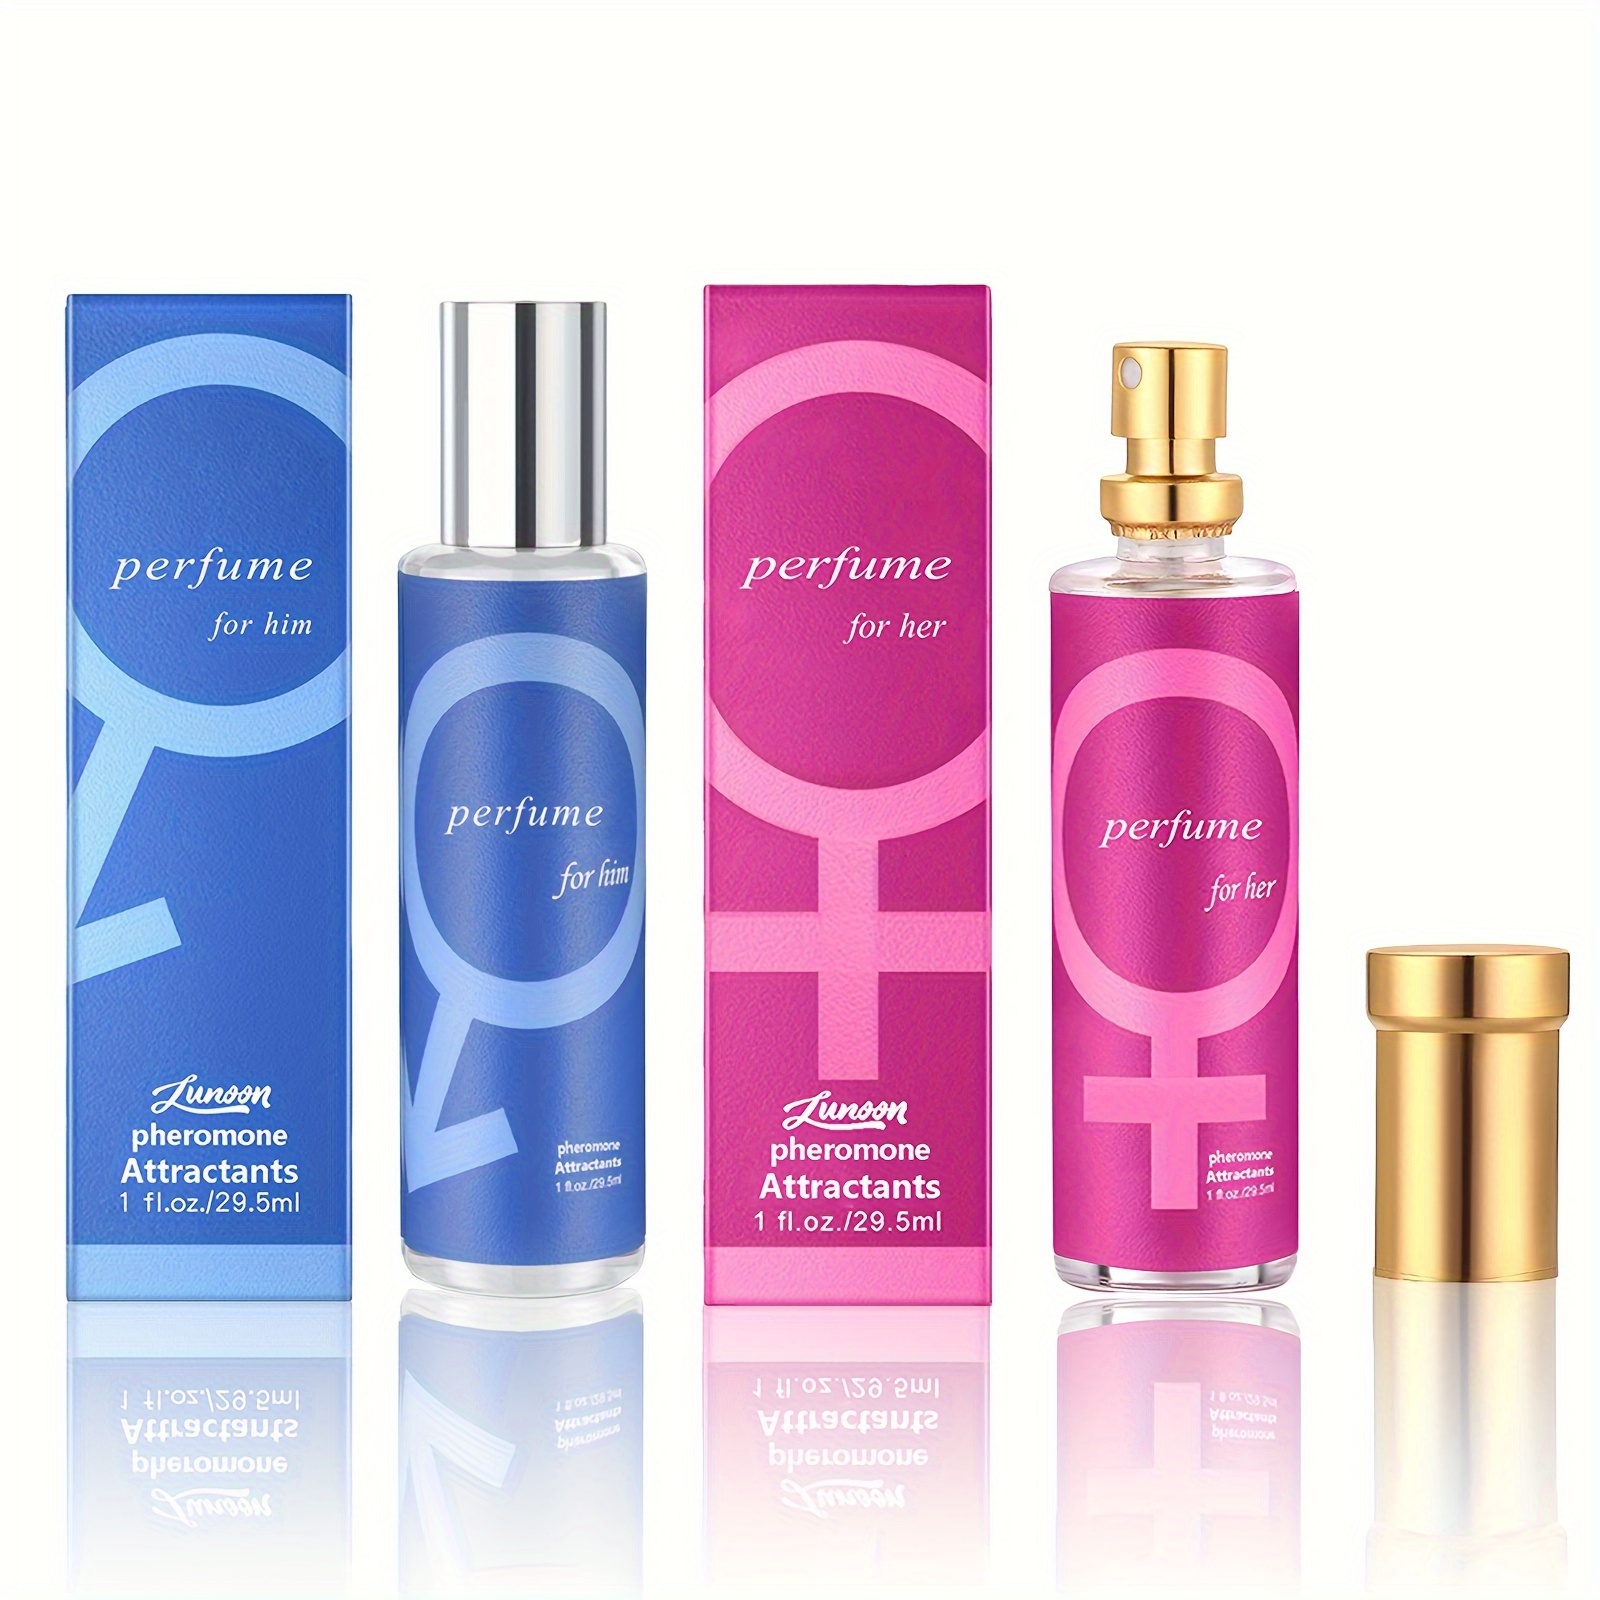 Aphrodisiac Golden Lure Her Pheromone Perfume Spray For Women to